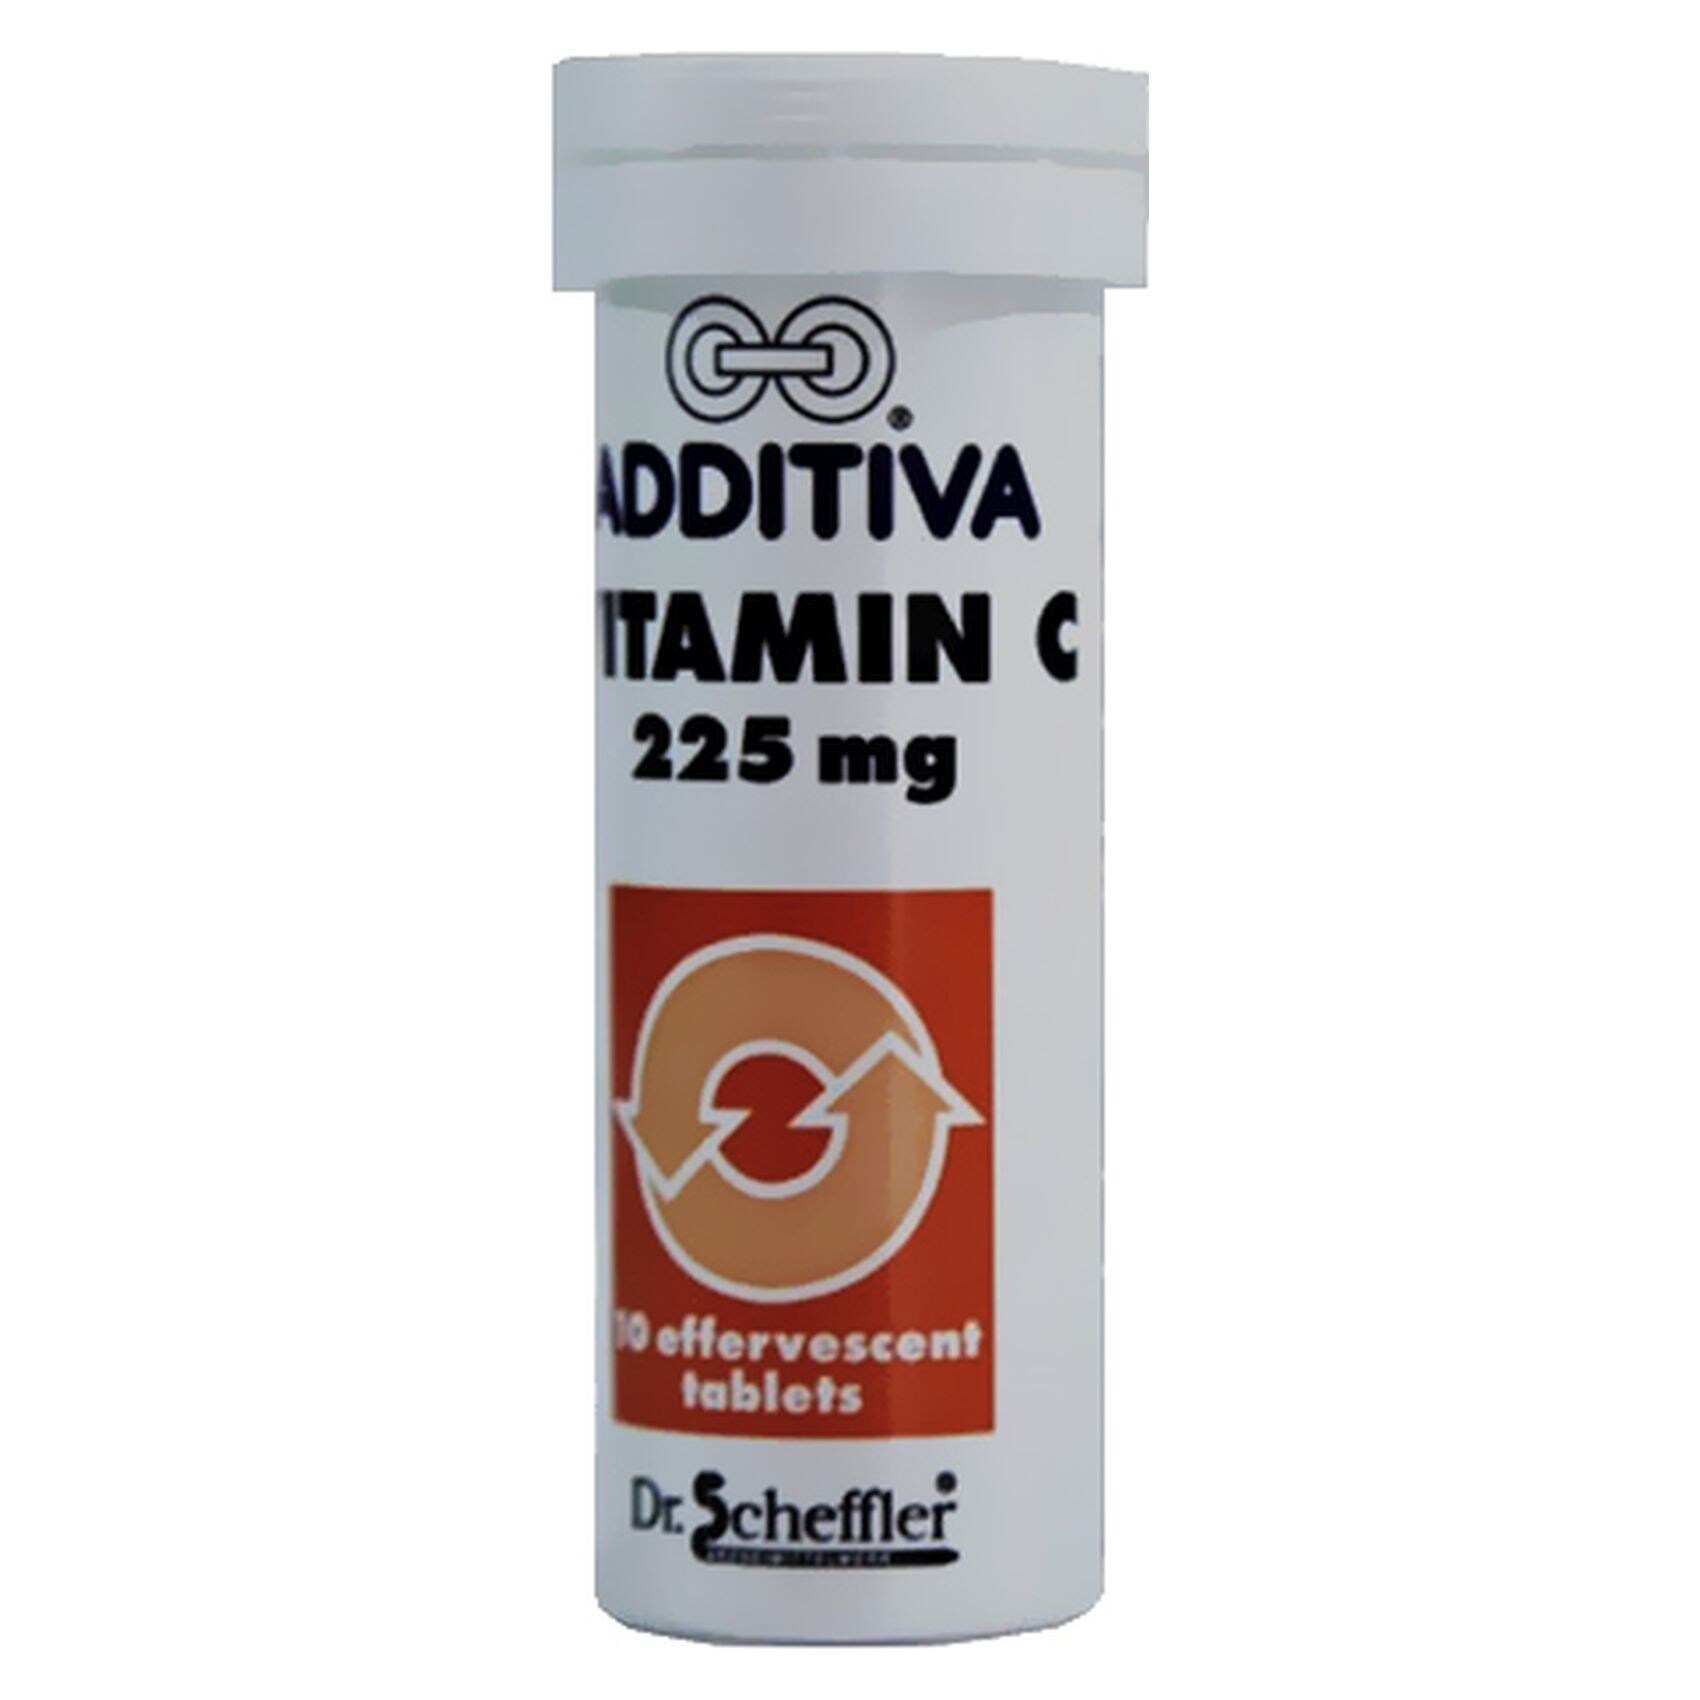 Buy Additiva Vitamin C Lemon Effervescent Tablets 225mg Online - Shop